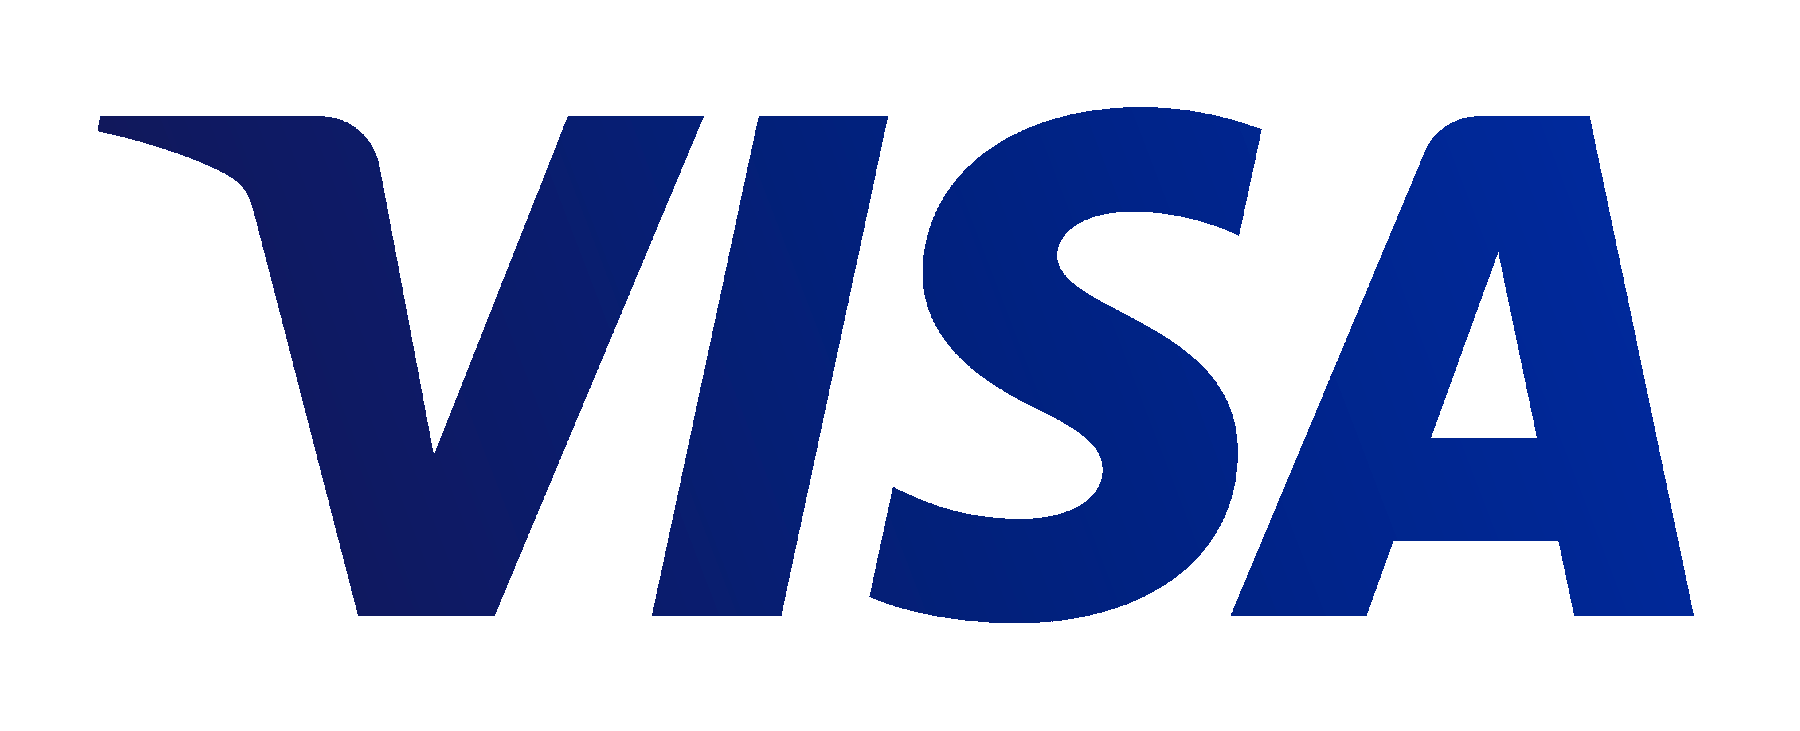 Logo Visa Credit Card, Png, 5